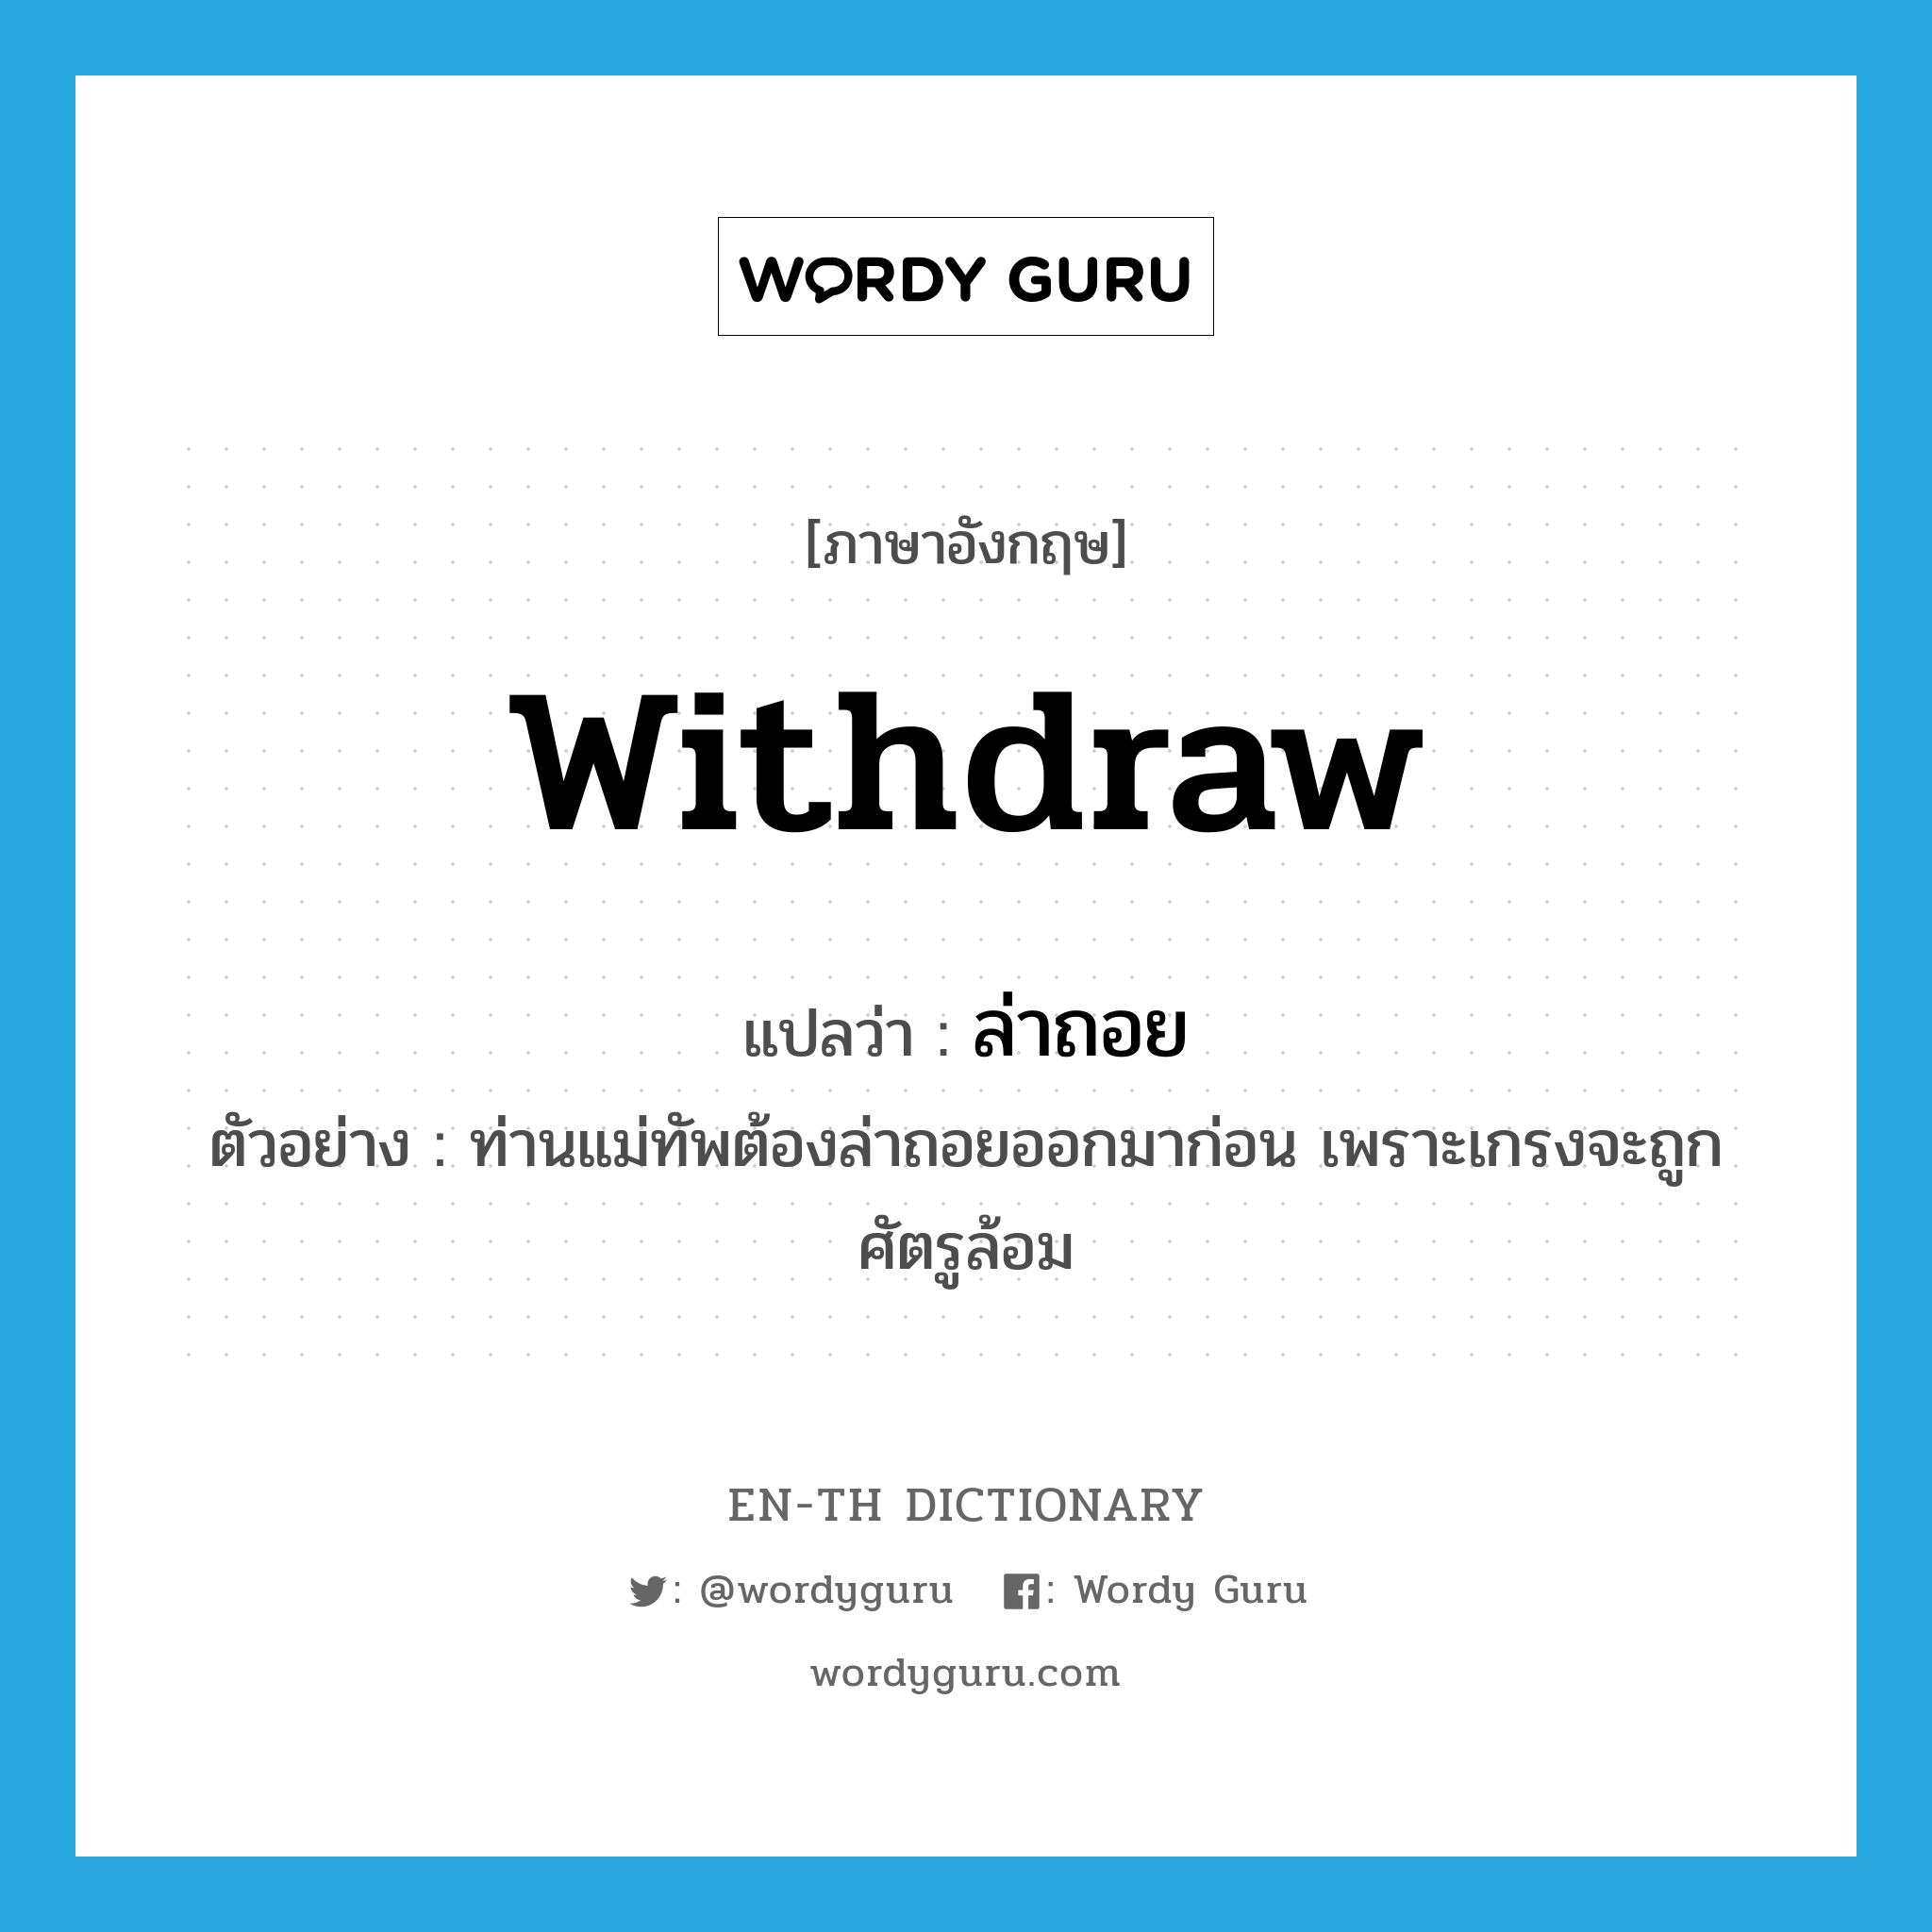 withdraw แปลว่า?, คำศัพท์ภาษาอังกฤษ withdraw แปลว่า ล่าถอย ประเภท V ตัวอย่าง ท่านแม่ทัพต้องล่าถอยออกมาก่อน เพราะเกรงจะถูกศัตรูล้อม หมวด V